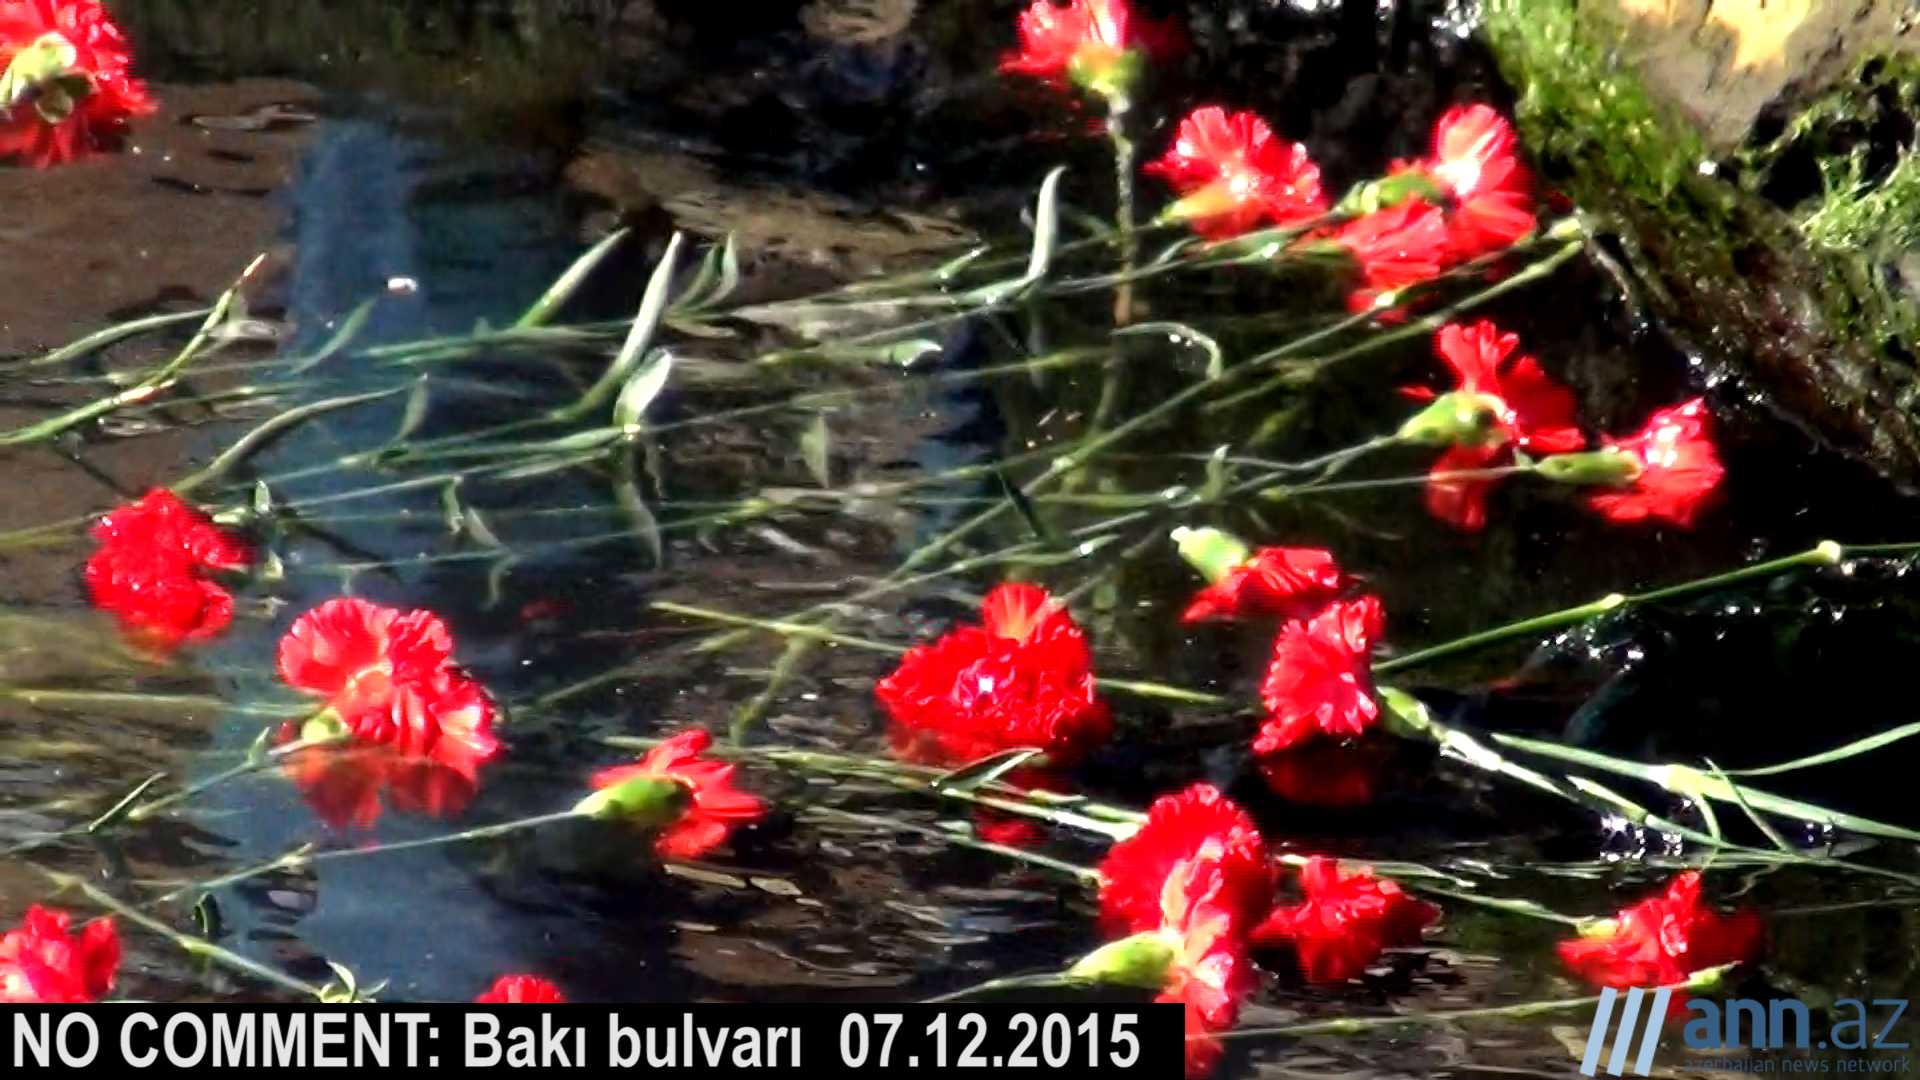 NO COMMENT: В Баку почтили память погибших нефтников